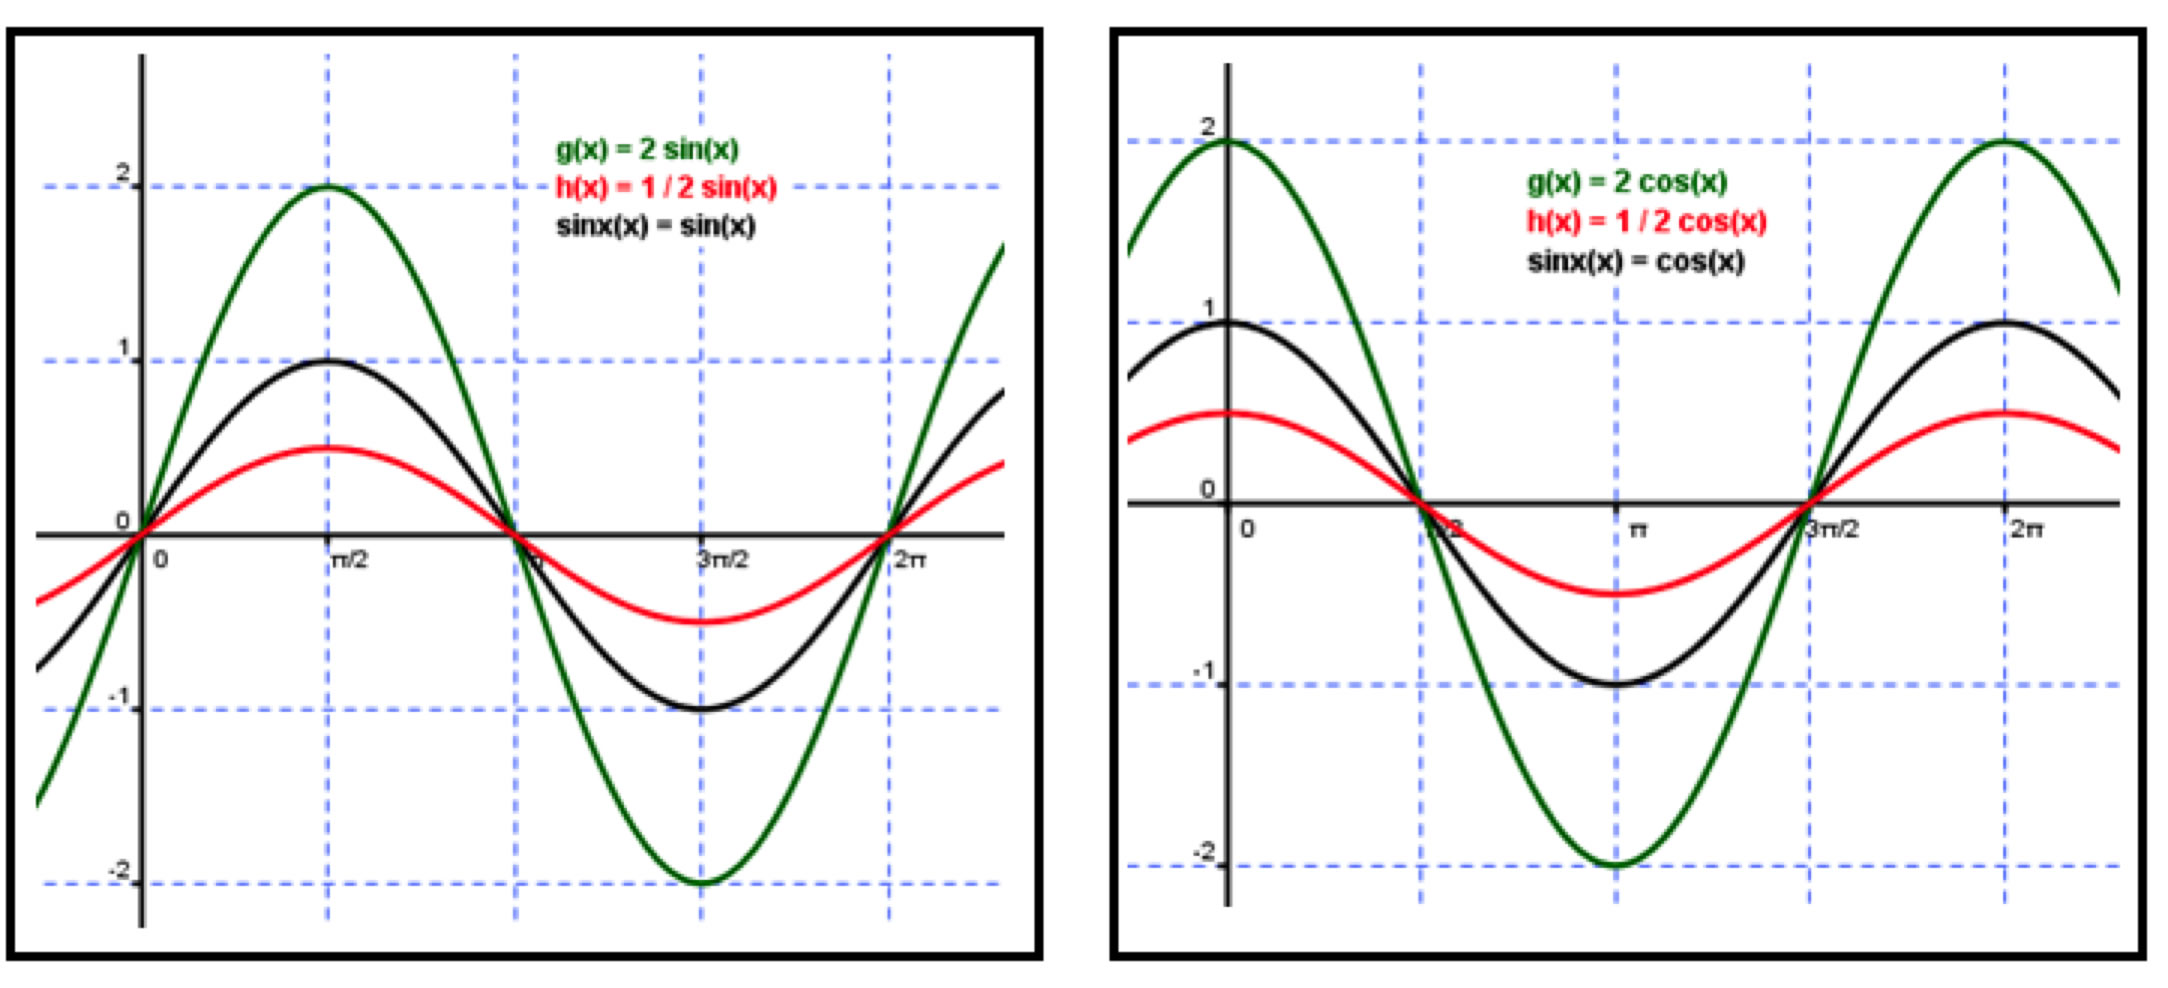 sine equation model